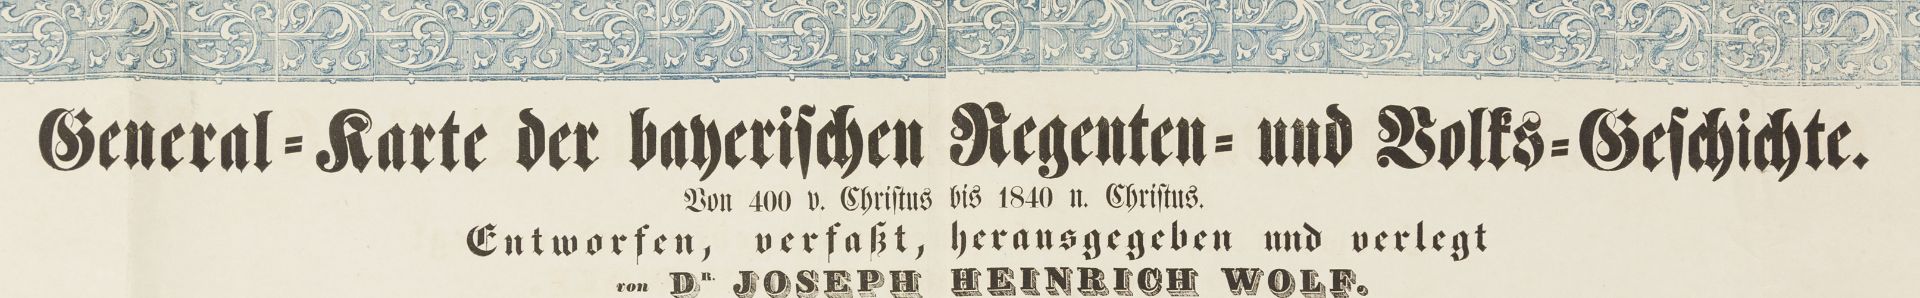 Bayern. – Joseph Heinrich Wolf